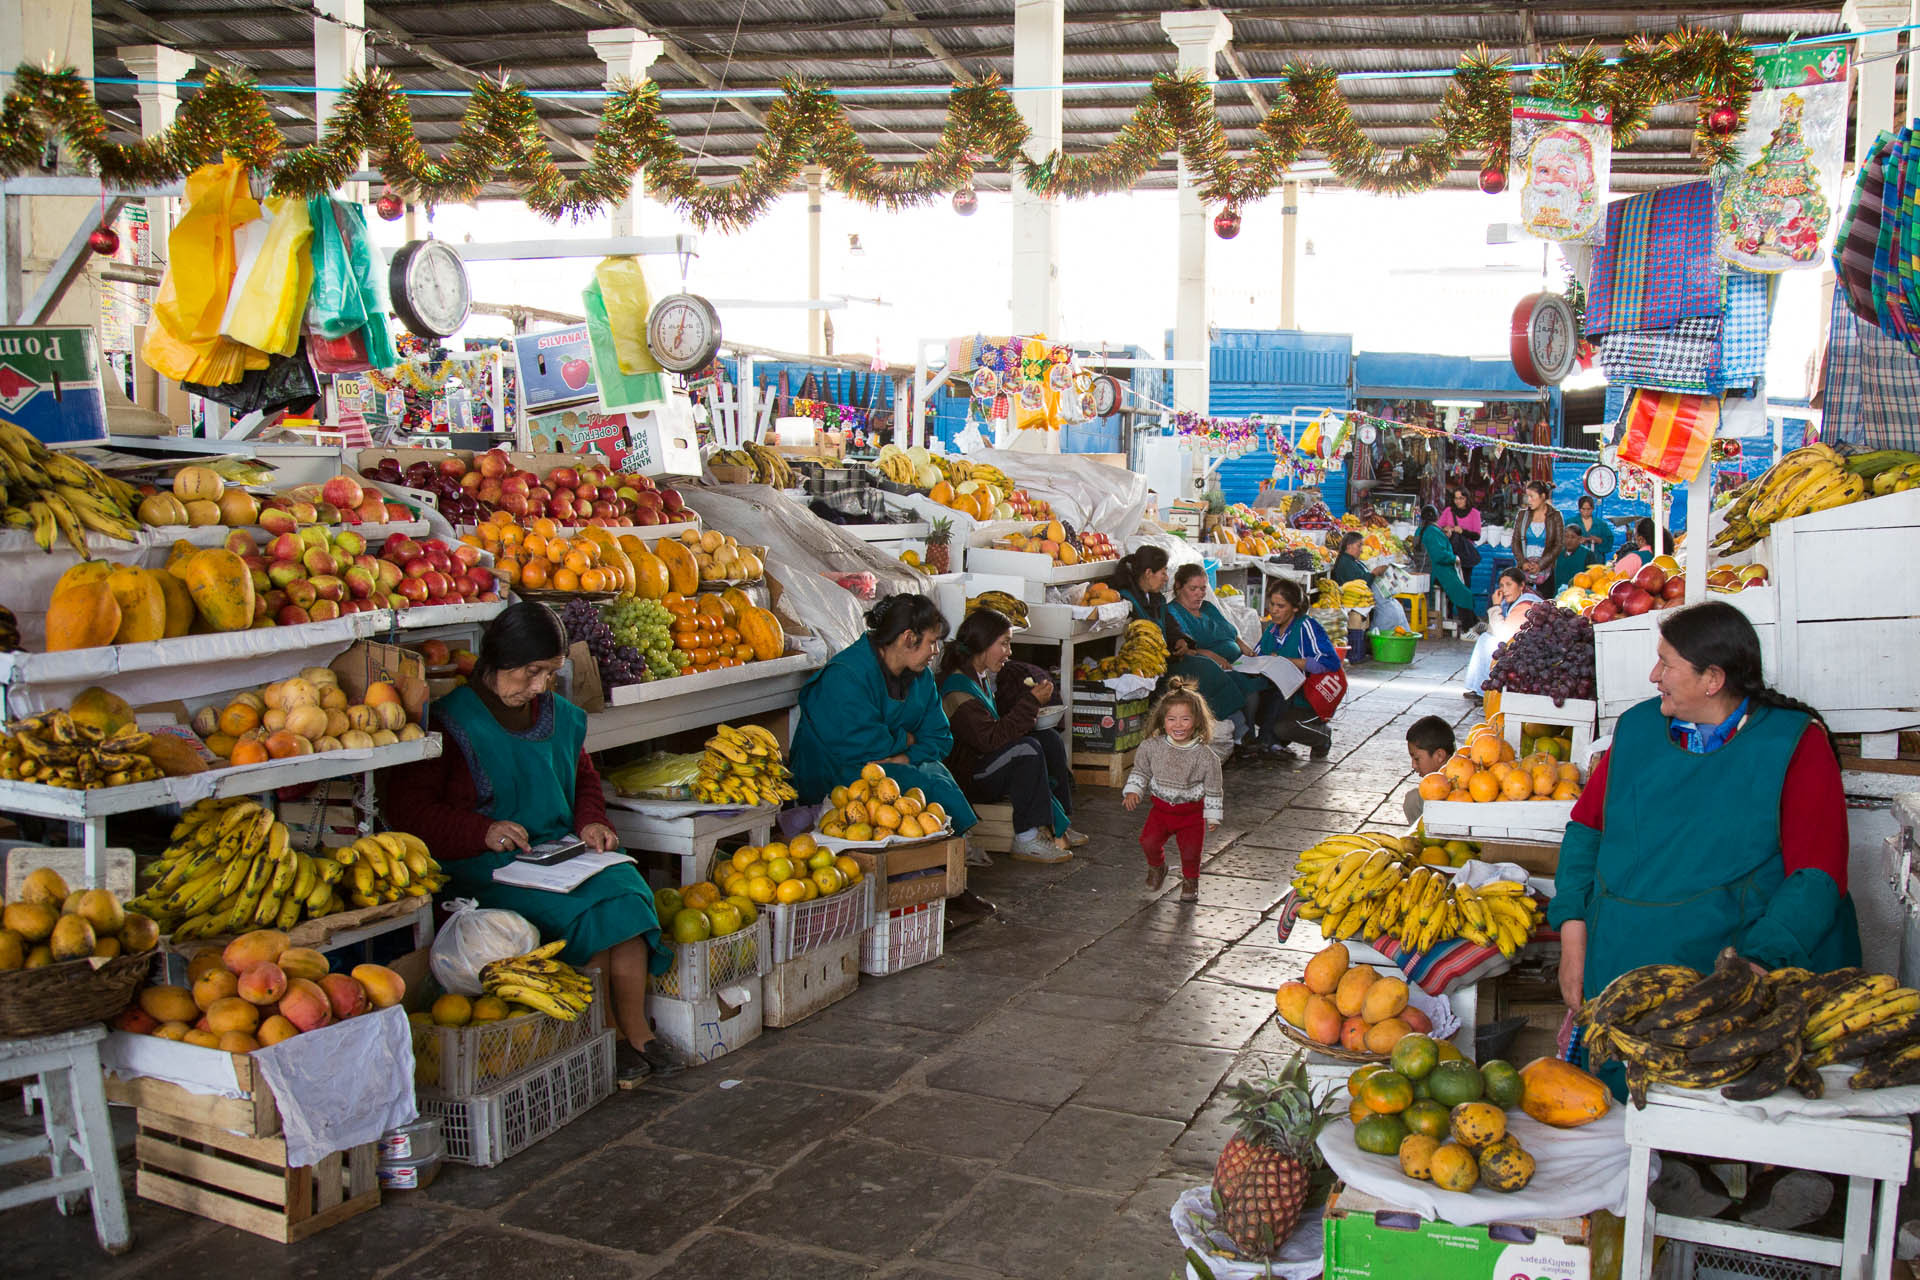 Scenes from Mercado Central de San Pedro